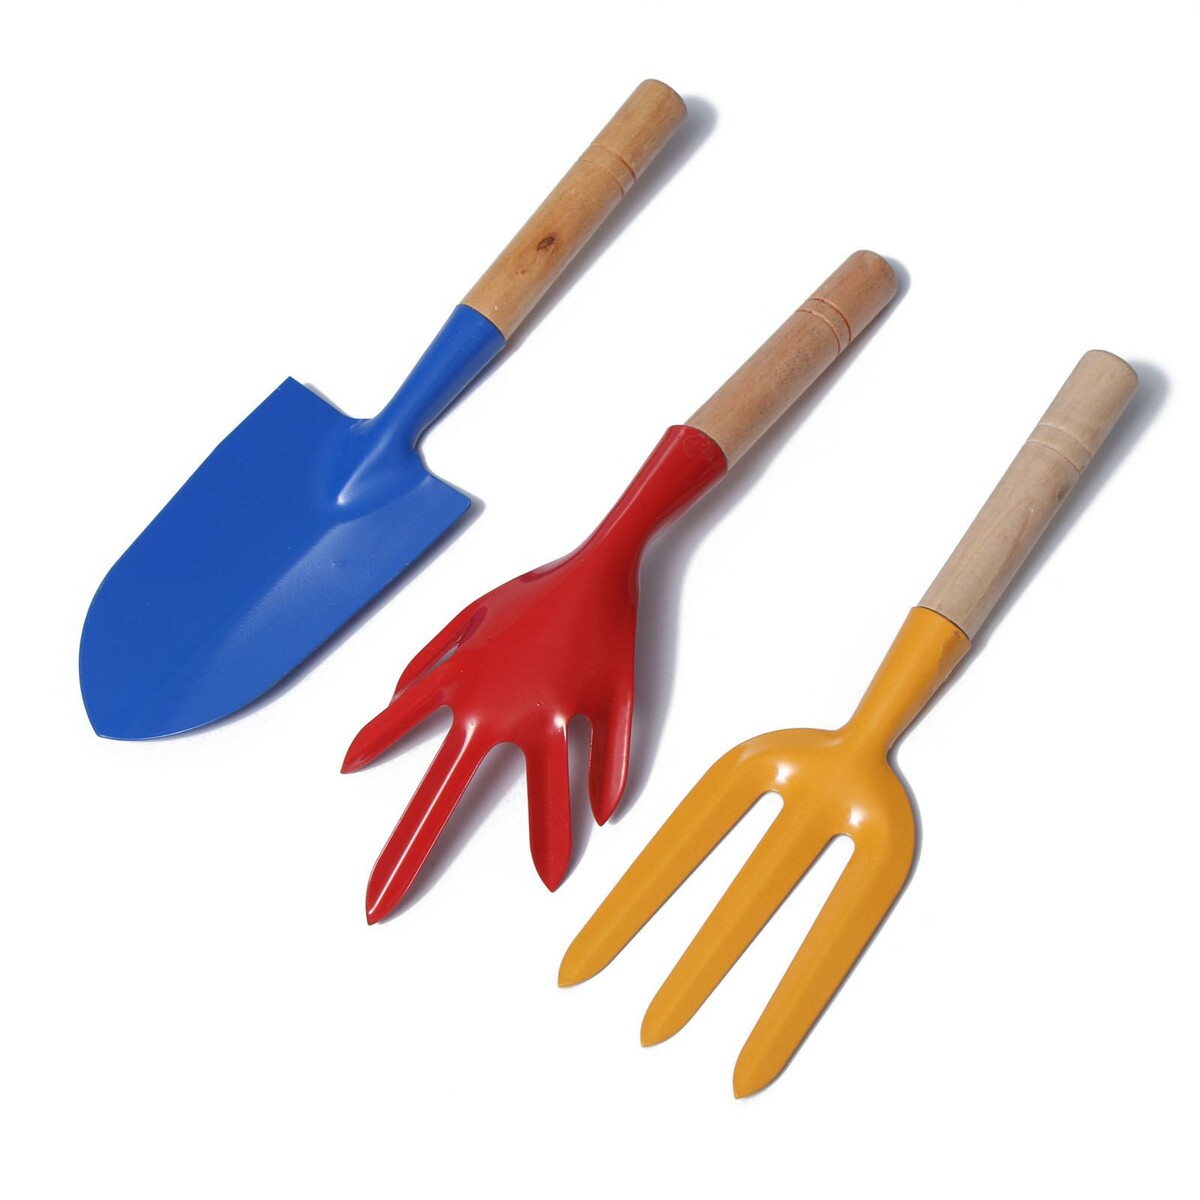 Набор садового инструмента, 3 предмета: совок, рыхлитель, вилка, длина 28 см, деревянные ручки набор подарочный 3в1 2 ручки фонарик синий